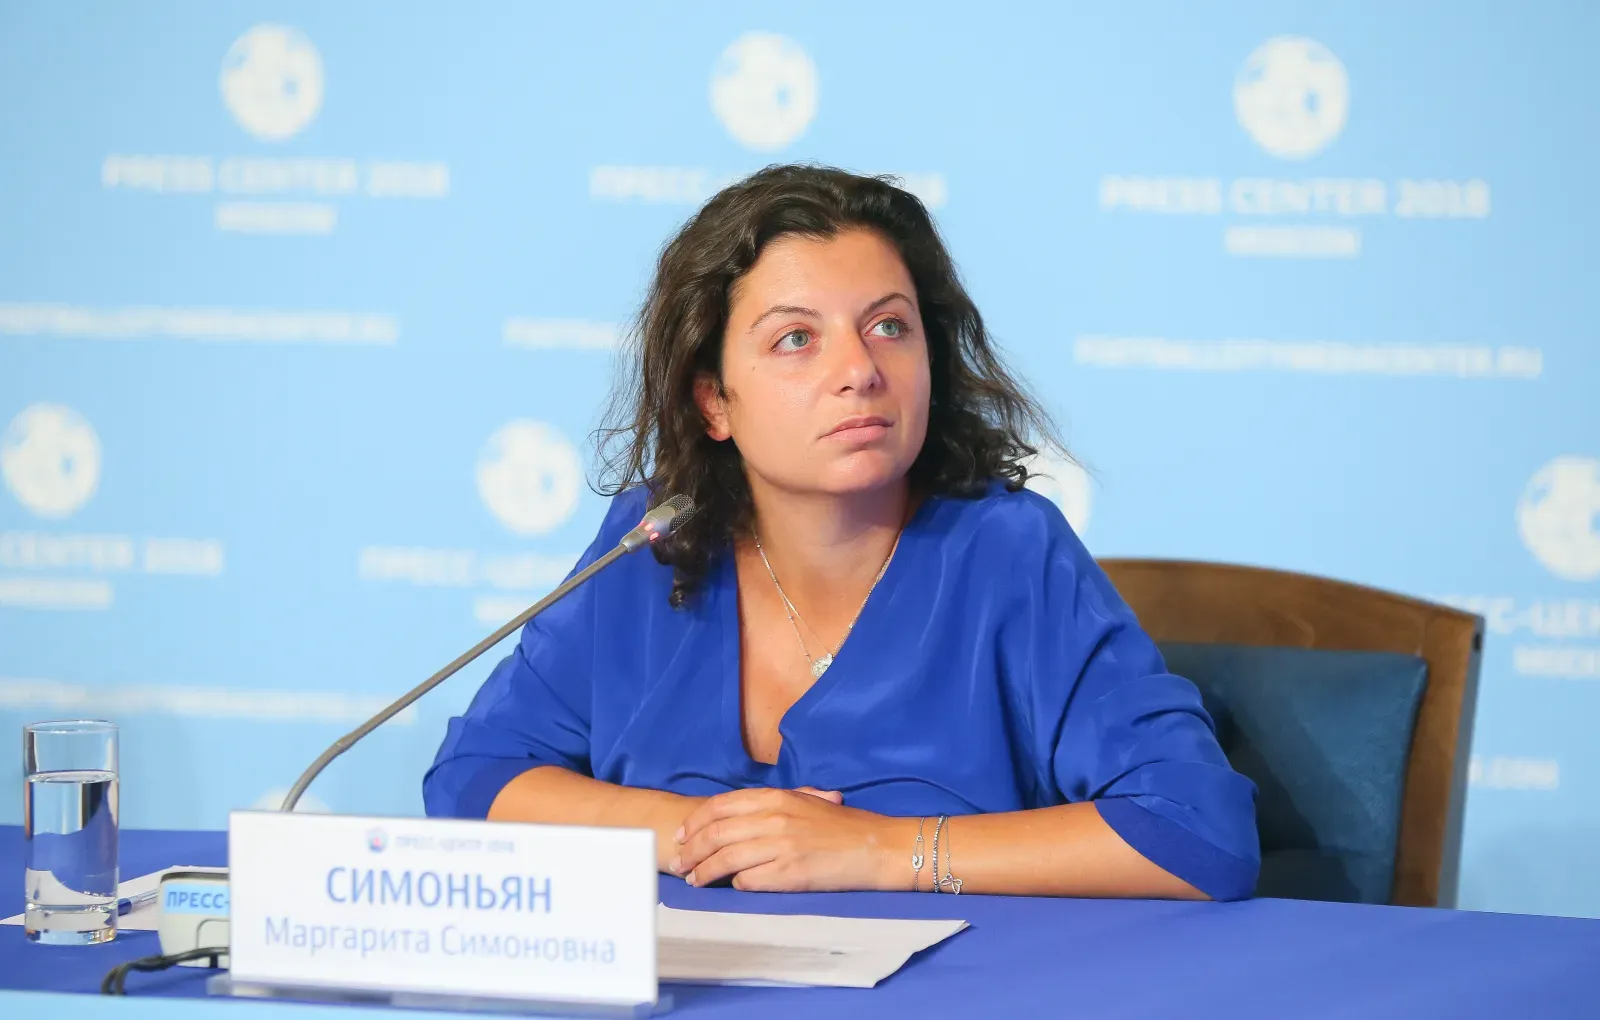 Симоньян обнародовала список пленных ВСУ, которых не хочет обменивать Киев